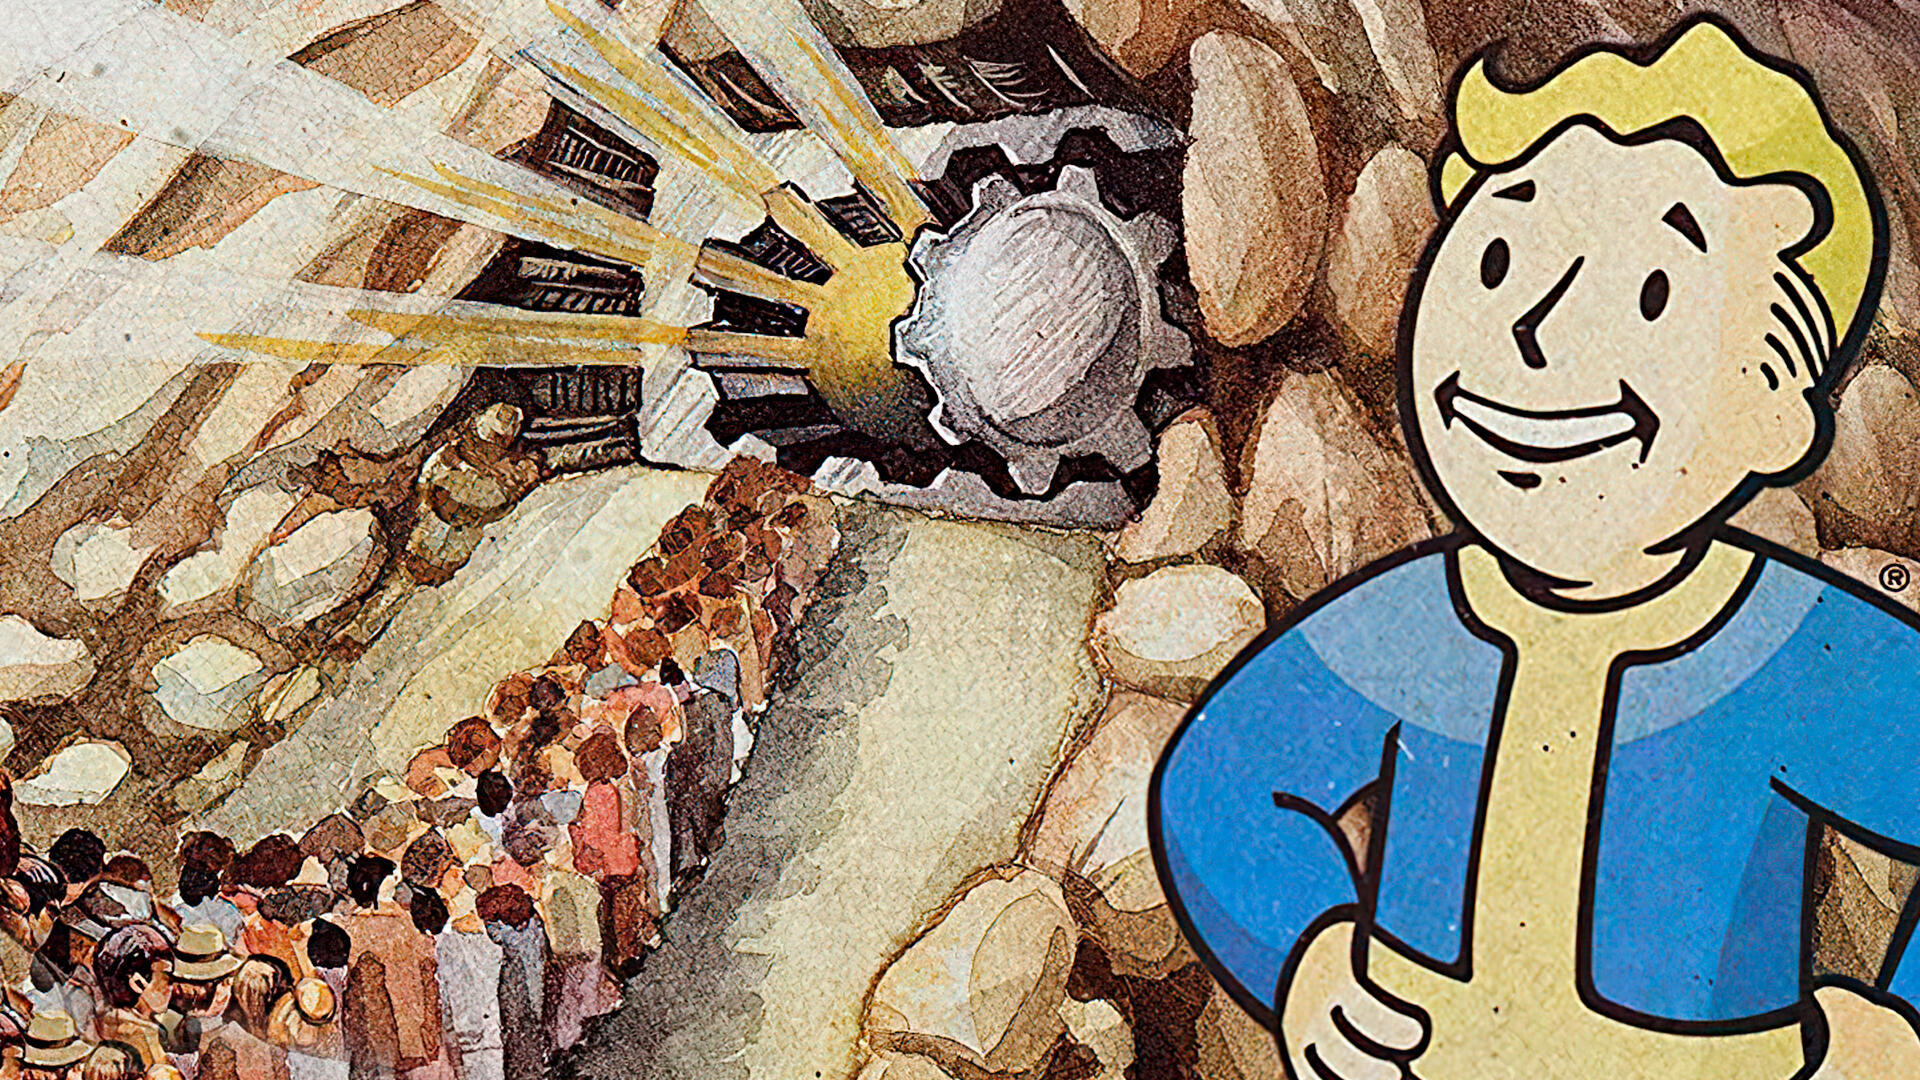 Los Refugios de Fallout con los experimentos más siniestros y espeluznantes hasta la fecha